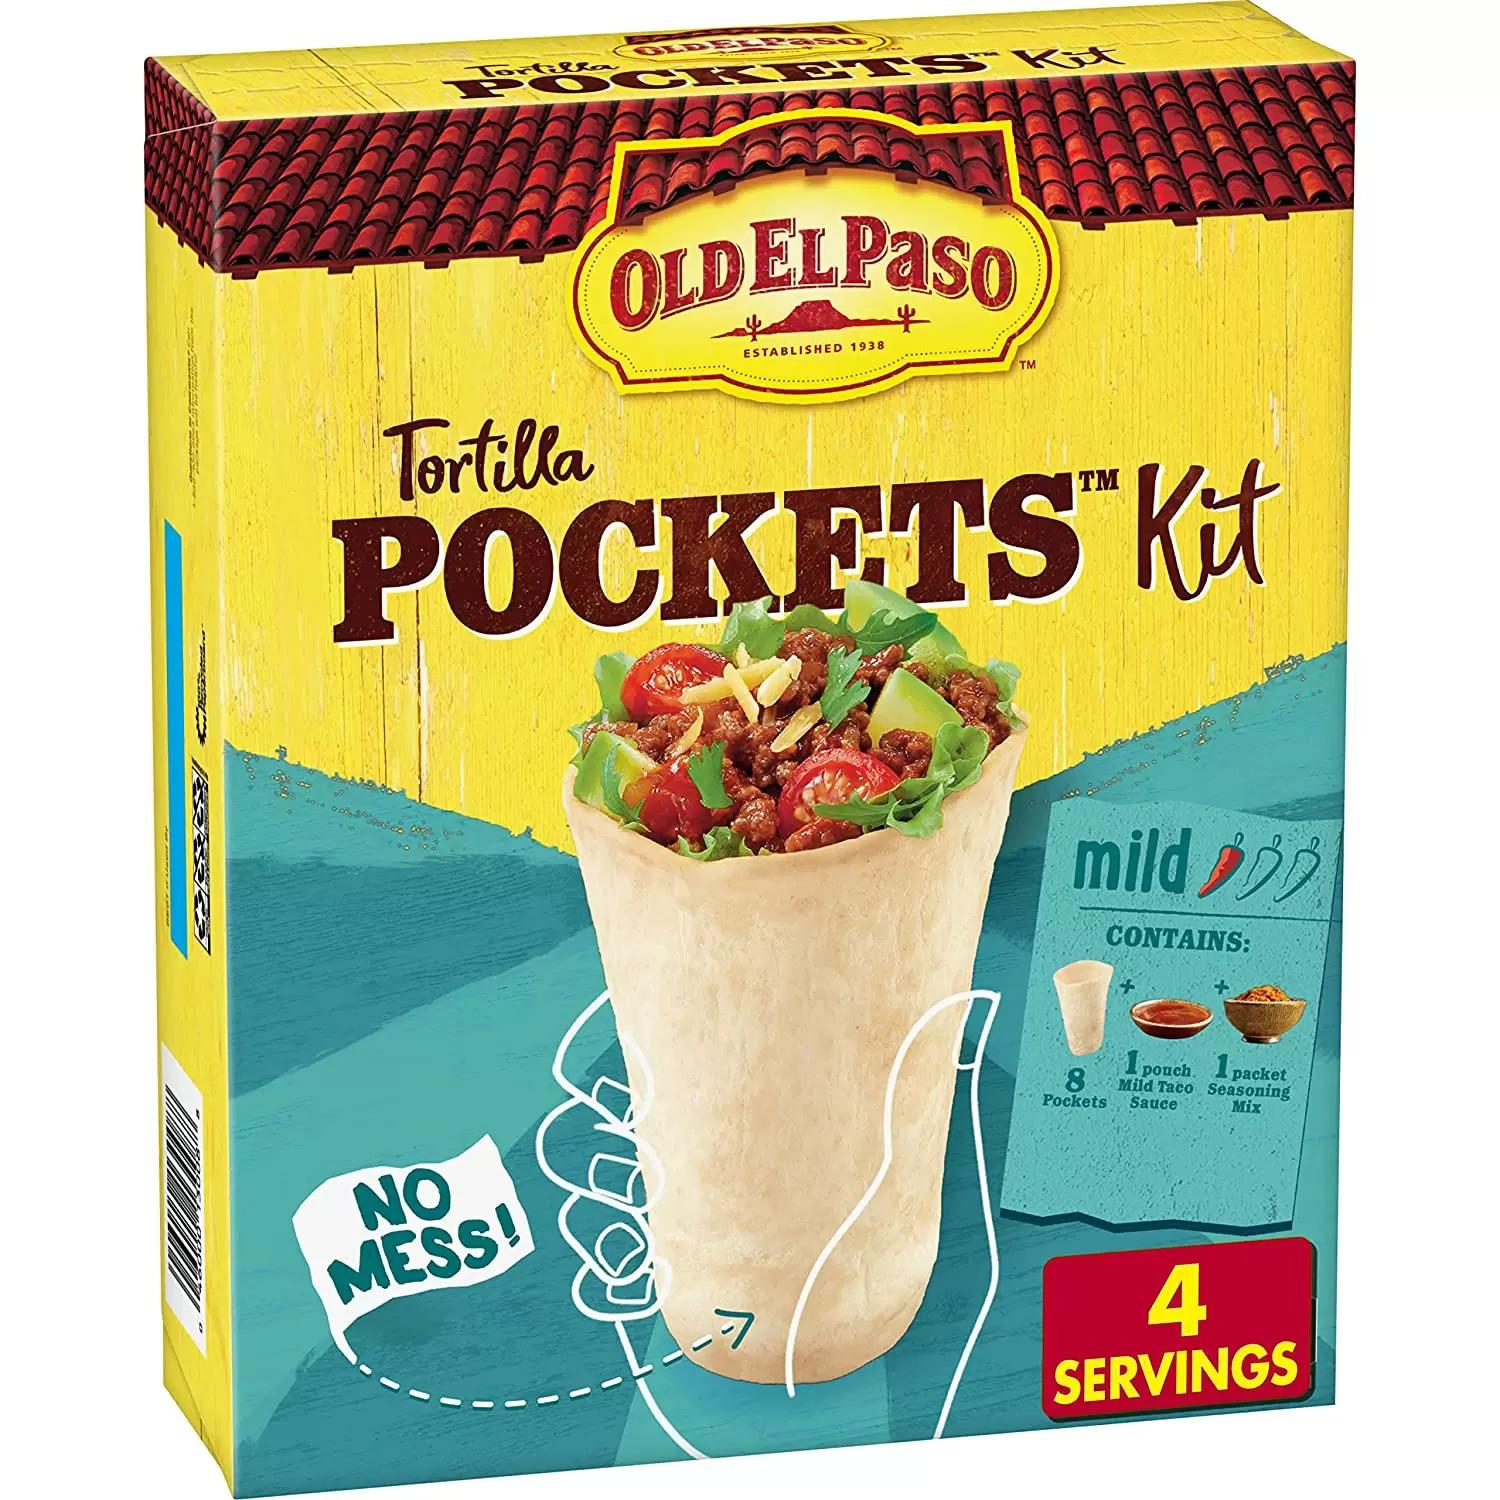 Old El Paso Tortilla Pocket Kit for $2.70 Shipped